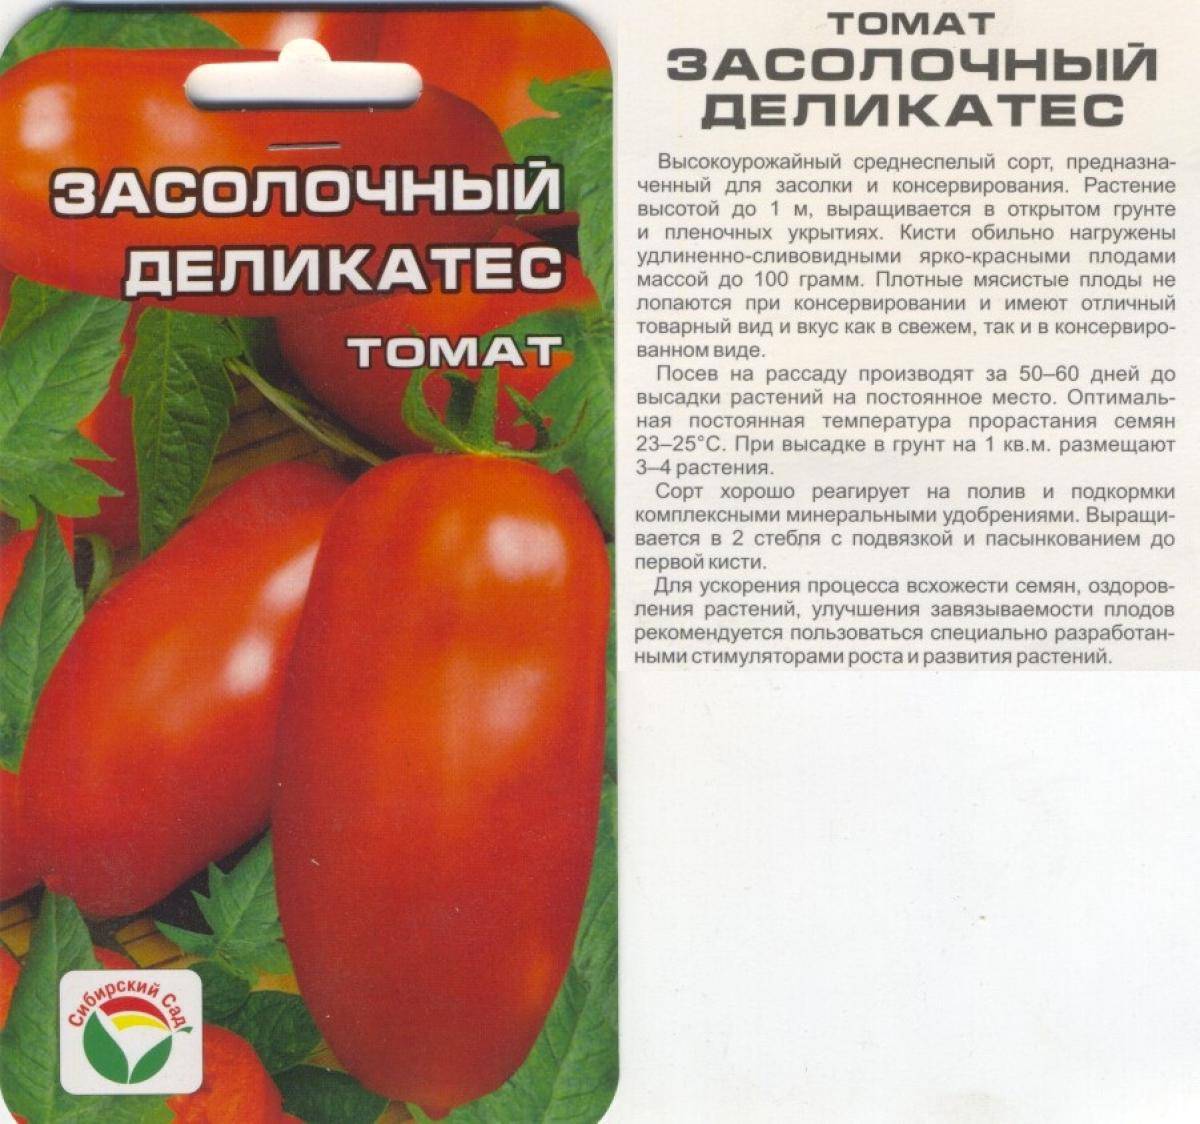 Томат московский деликатес характеристика и описание сорта